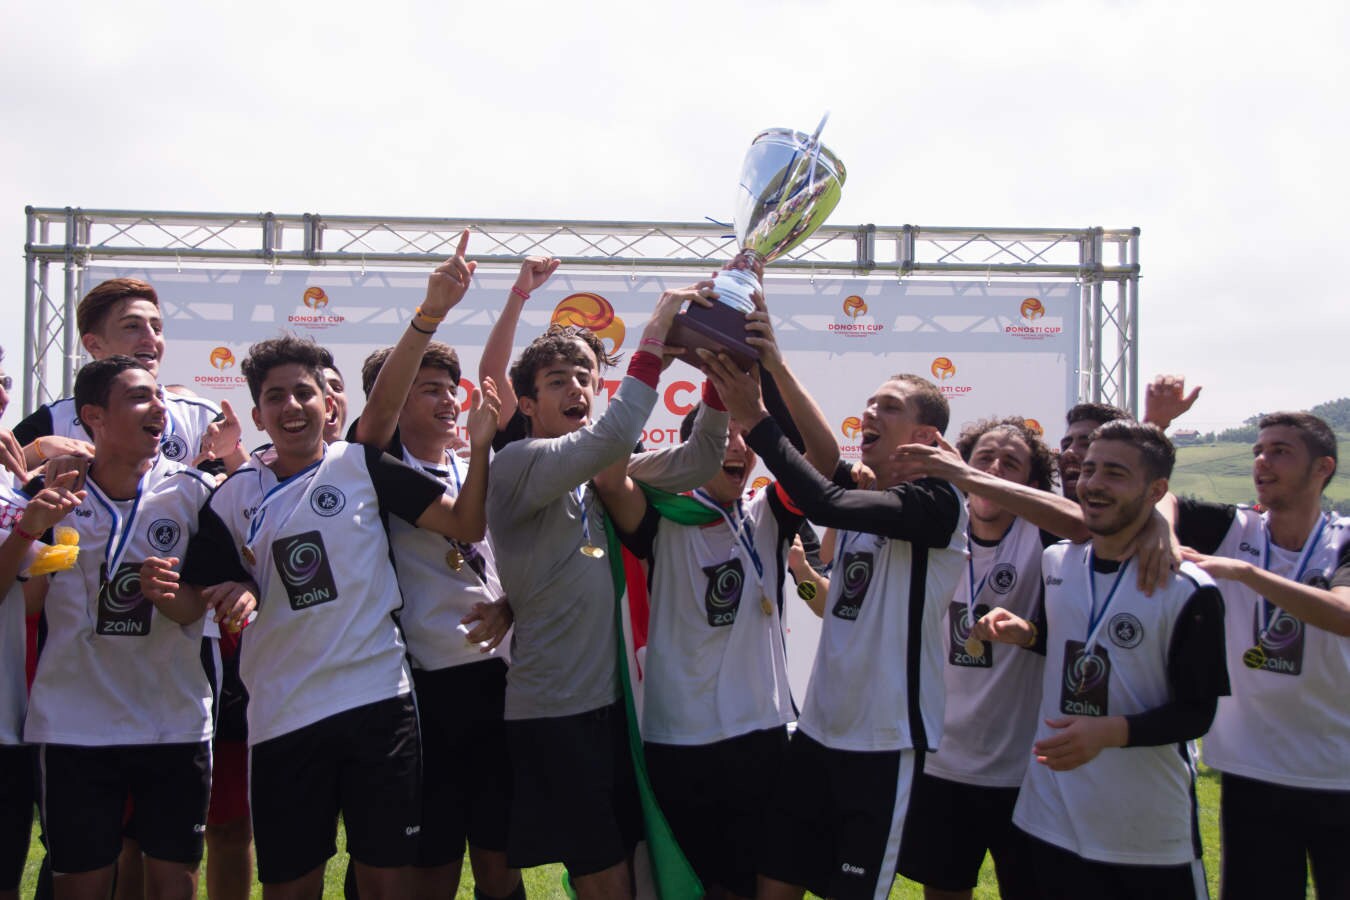 Fotos: Las mejores imágenes de otras ediciones de la Donosti Cup